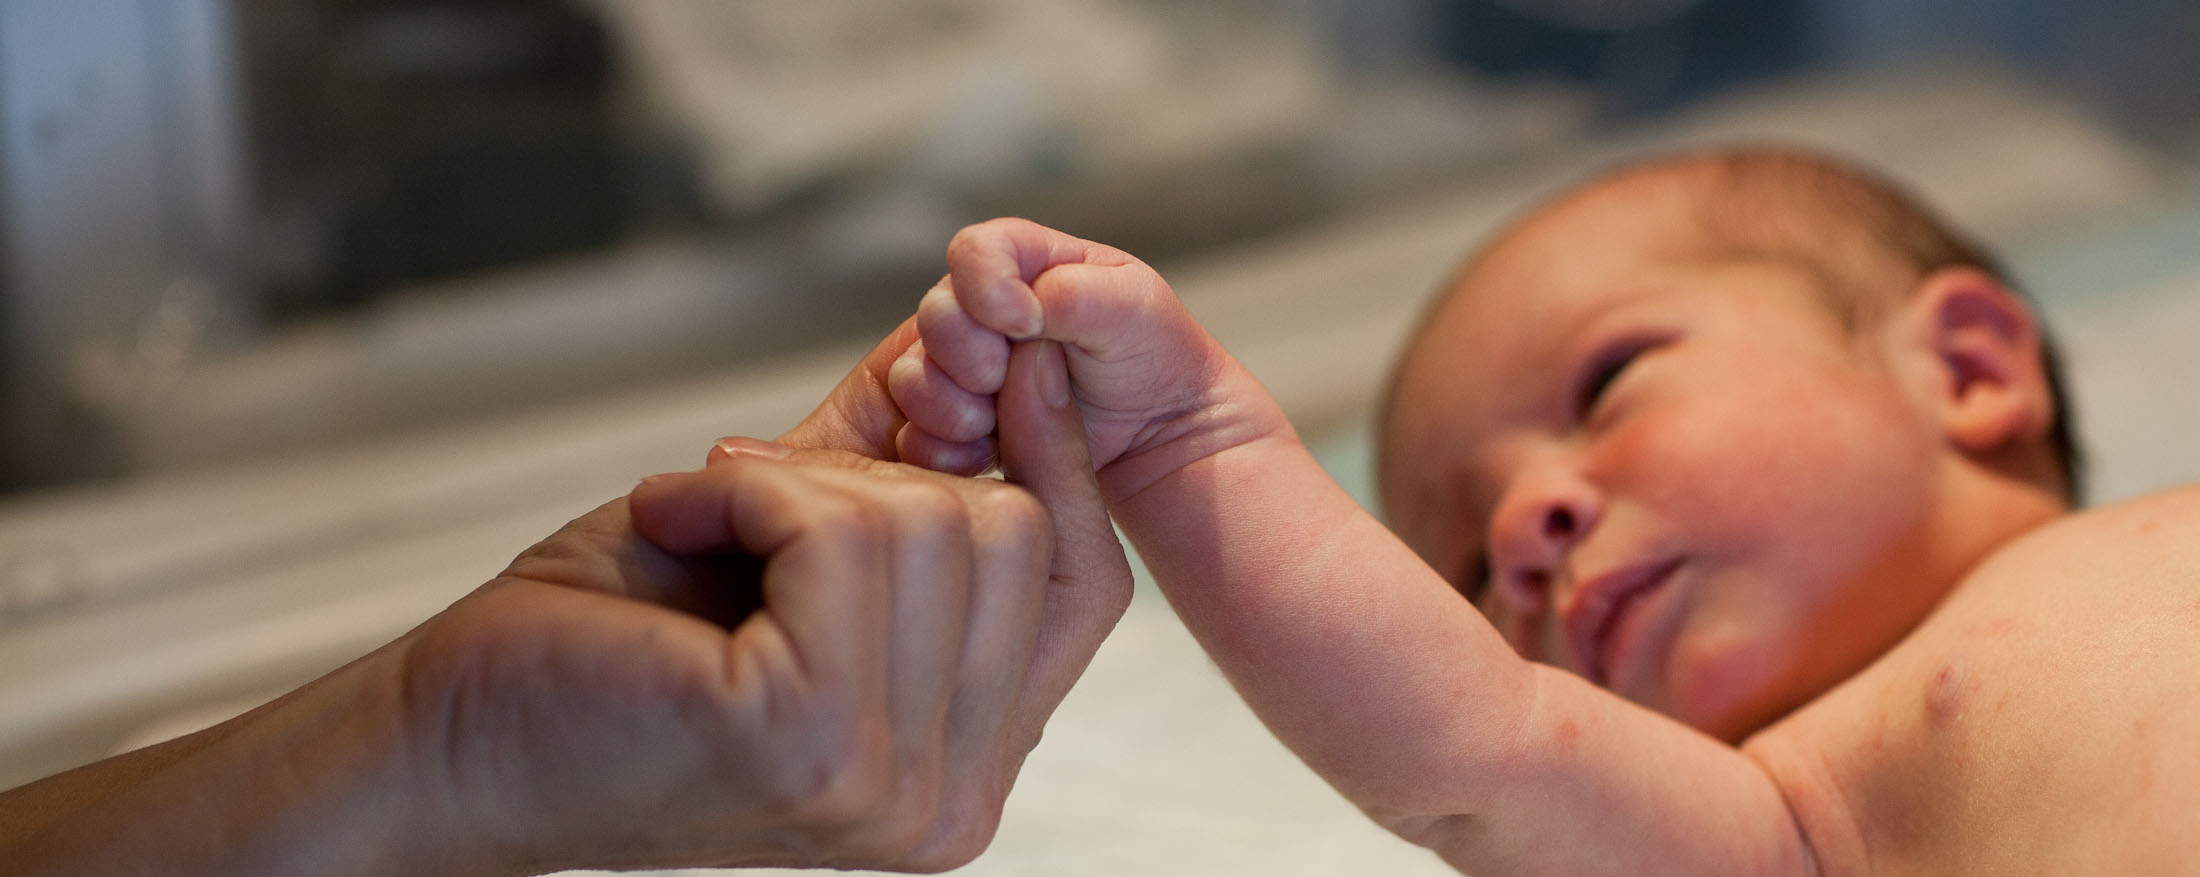 Un adulte tenant doucement la main d'un nouveau-né